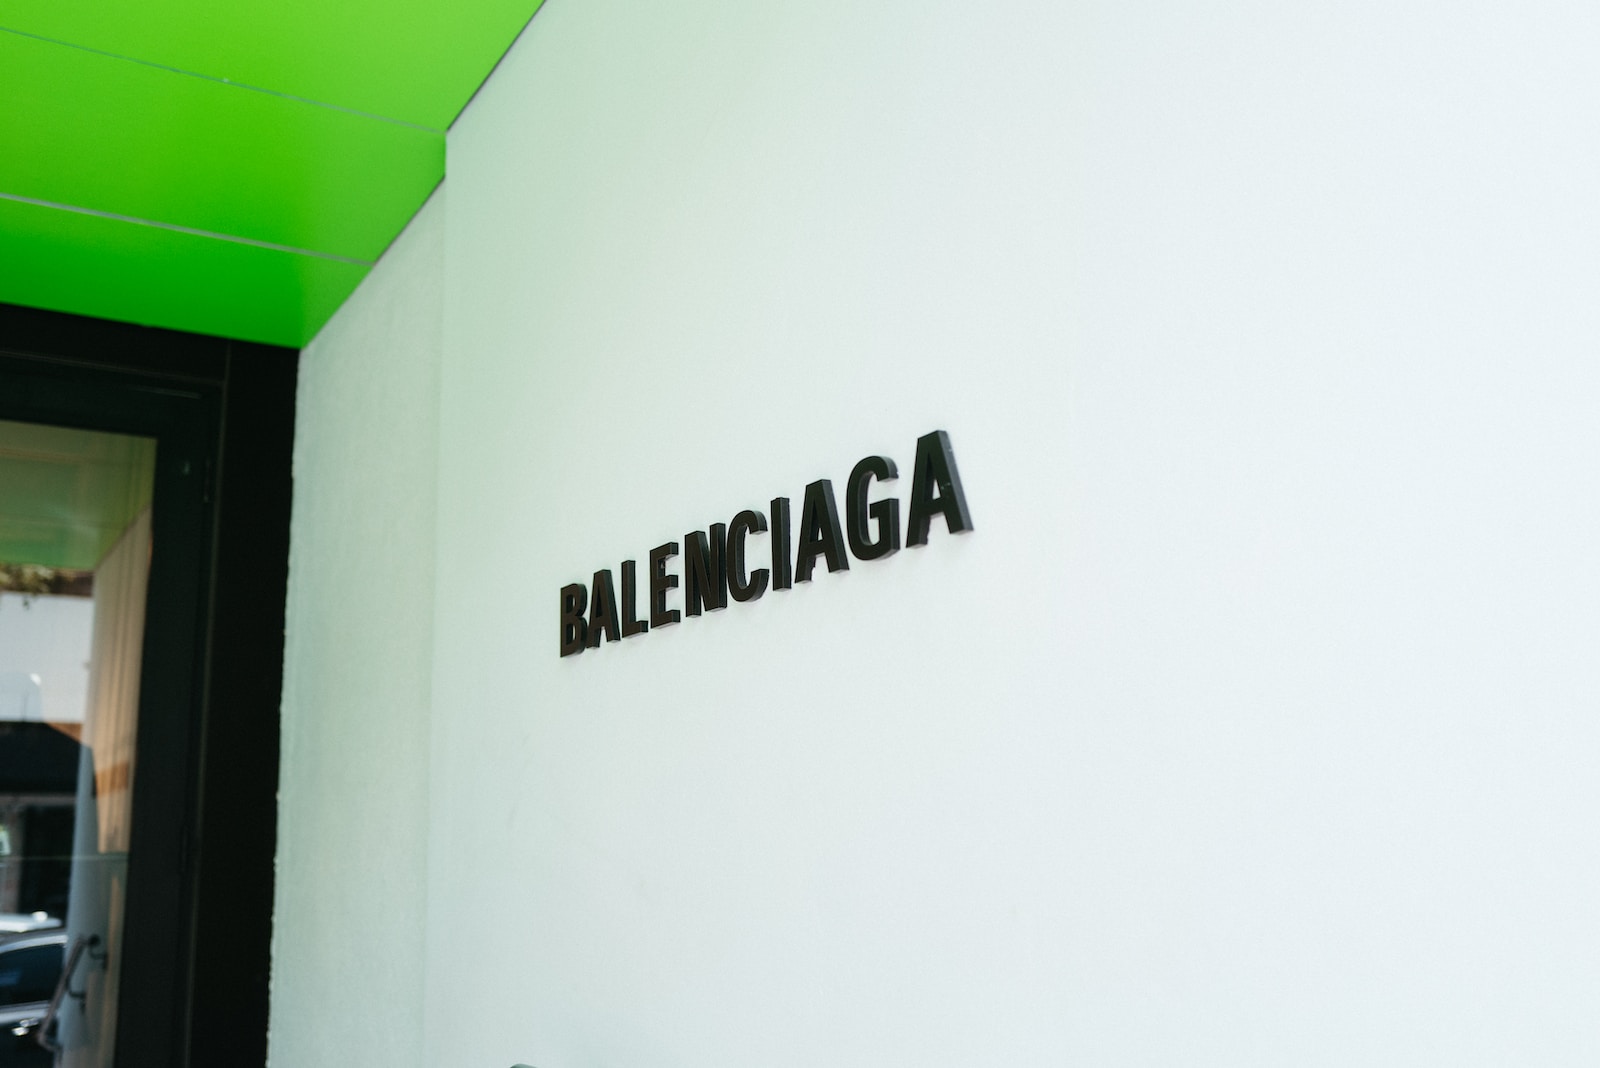 Is Balenciaga a Designer Brand